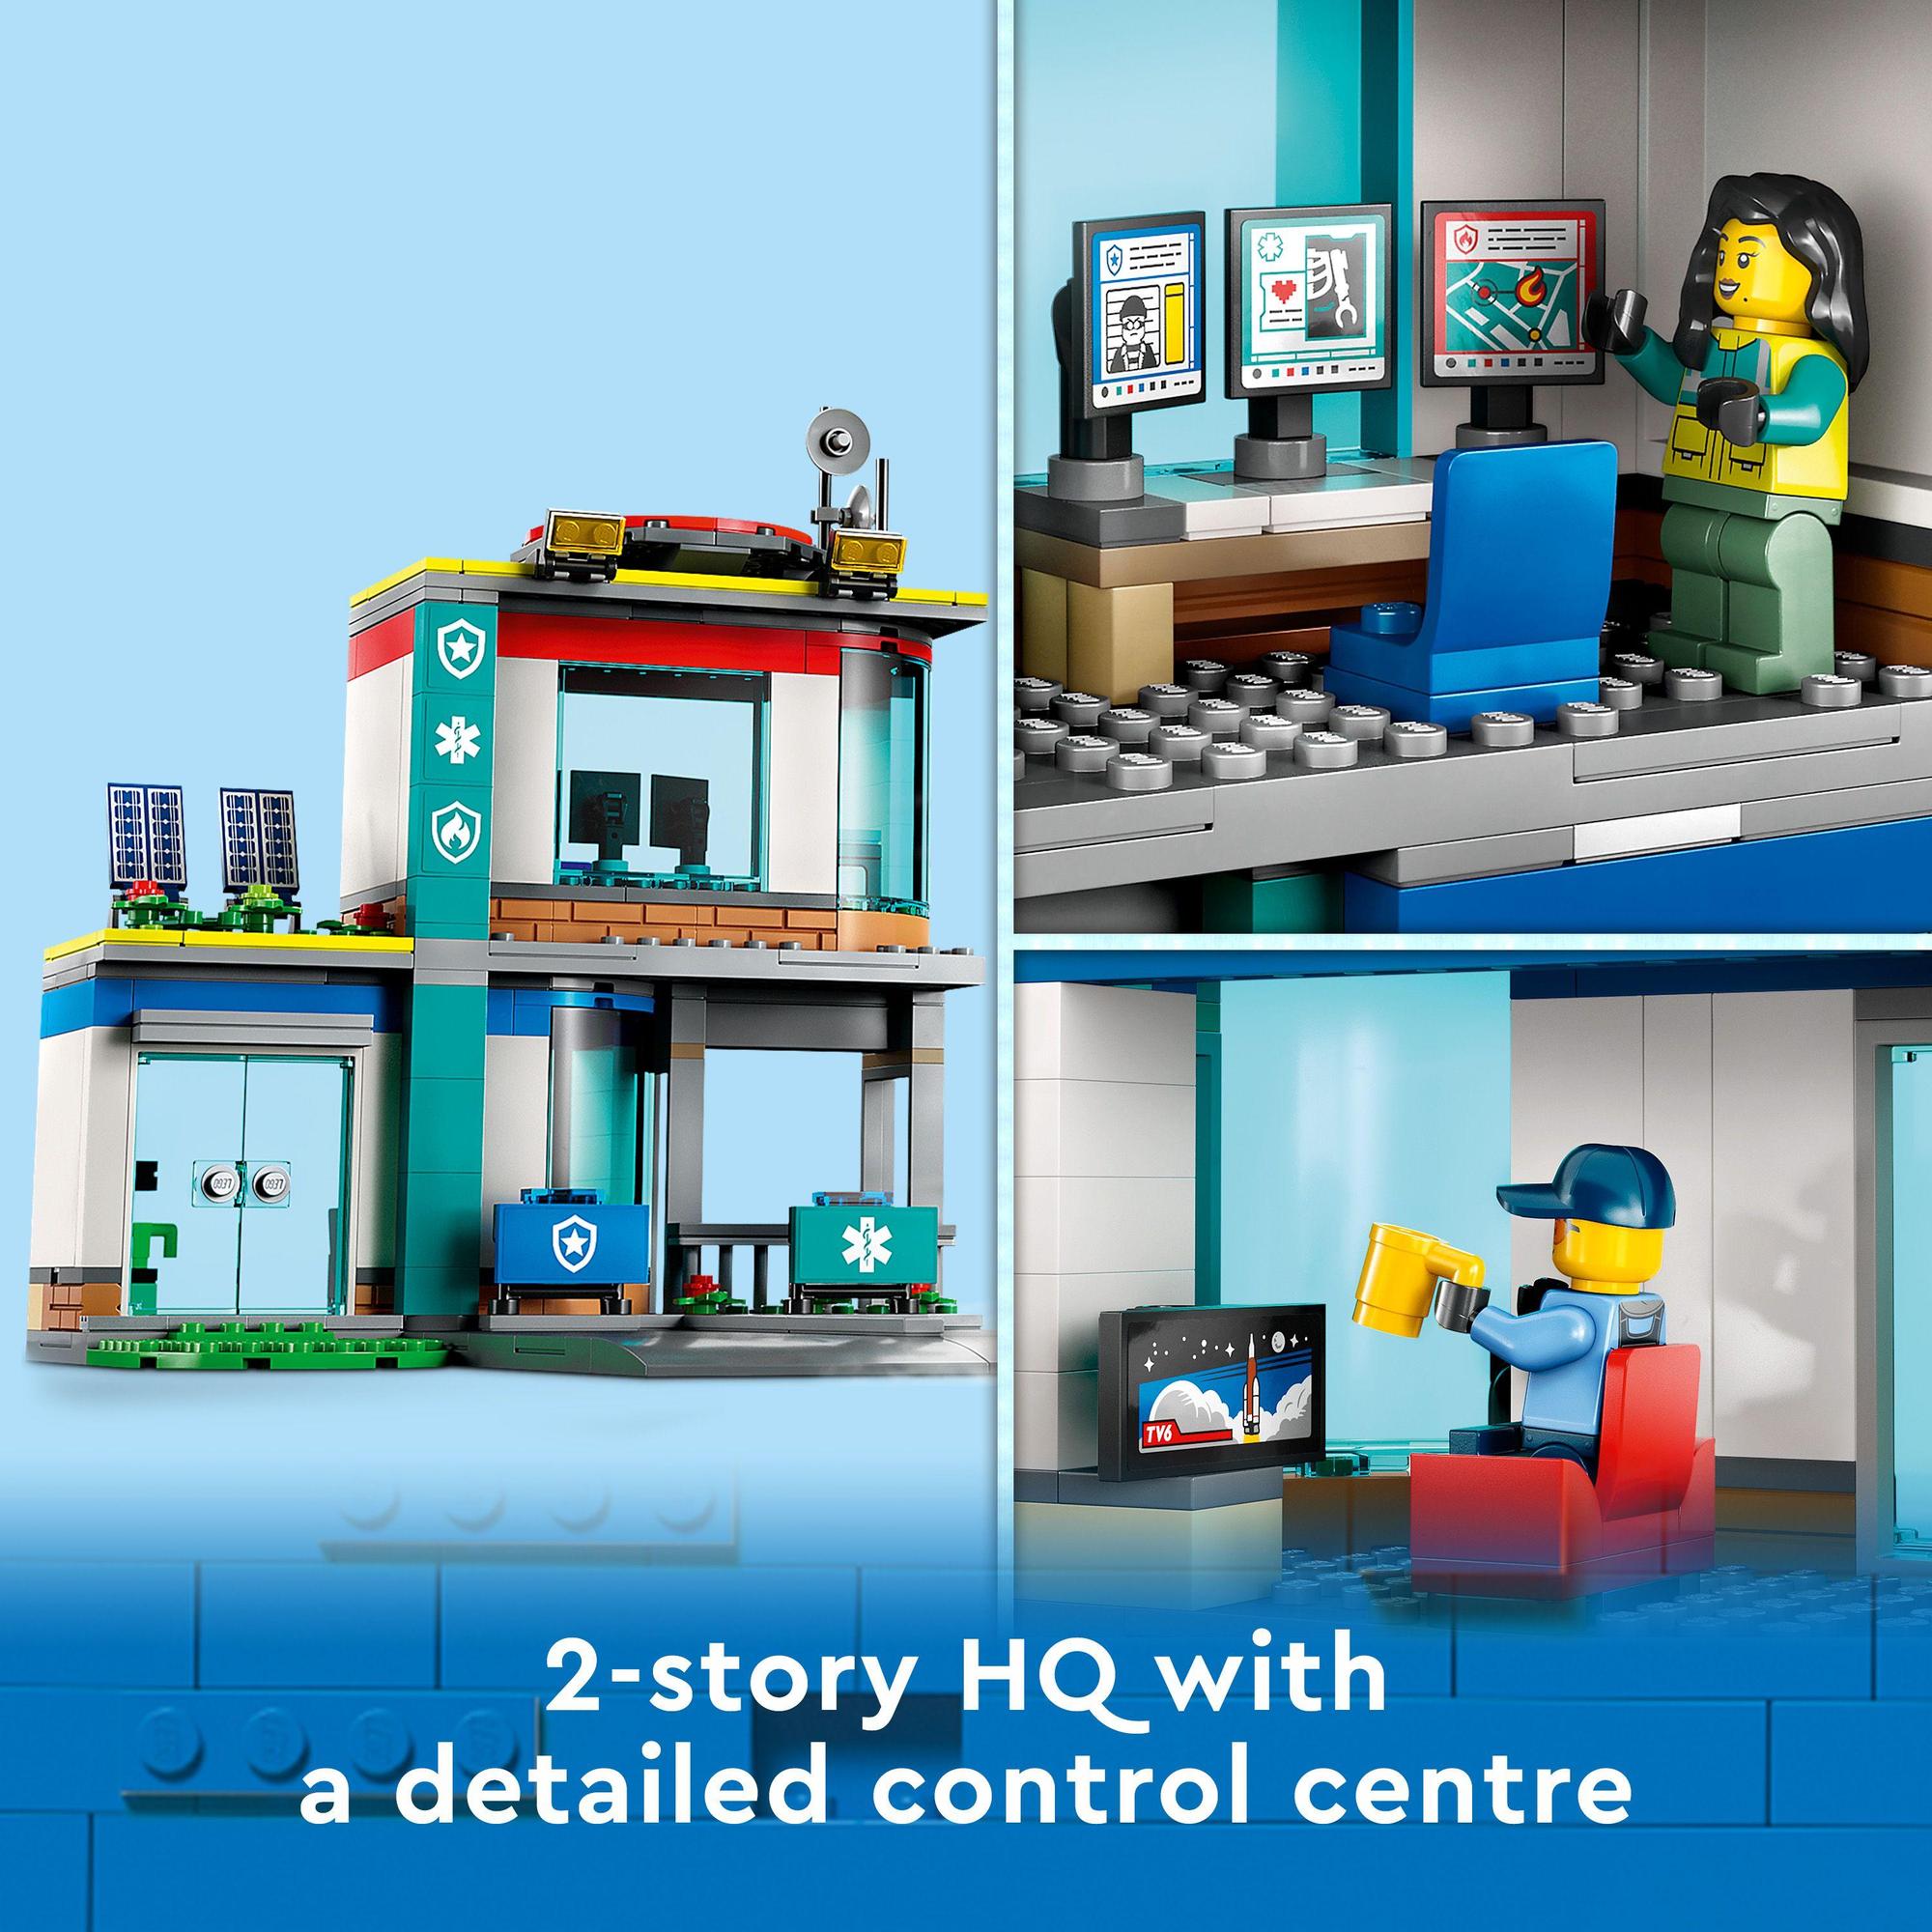 LEGO City 60371 Đồ chơi lắp ráp Trụ Sở Cứu Hộ Khẩn Cấp (706 Chi Tiết)